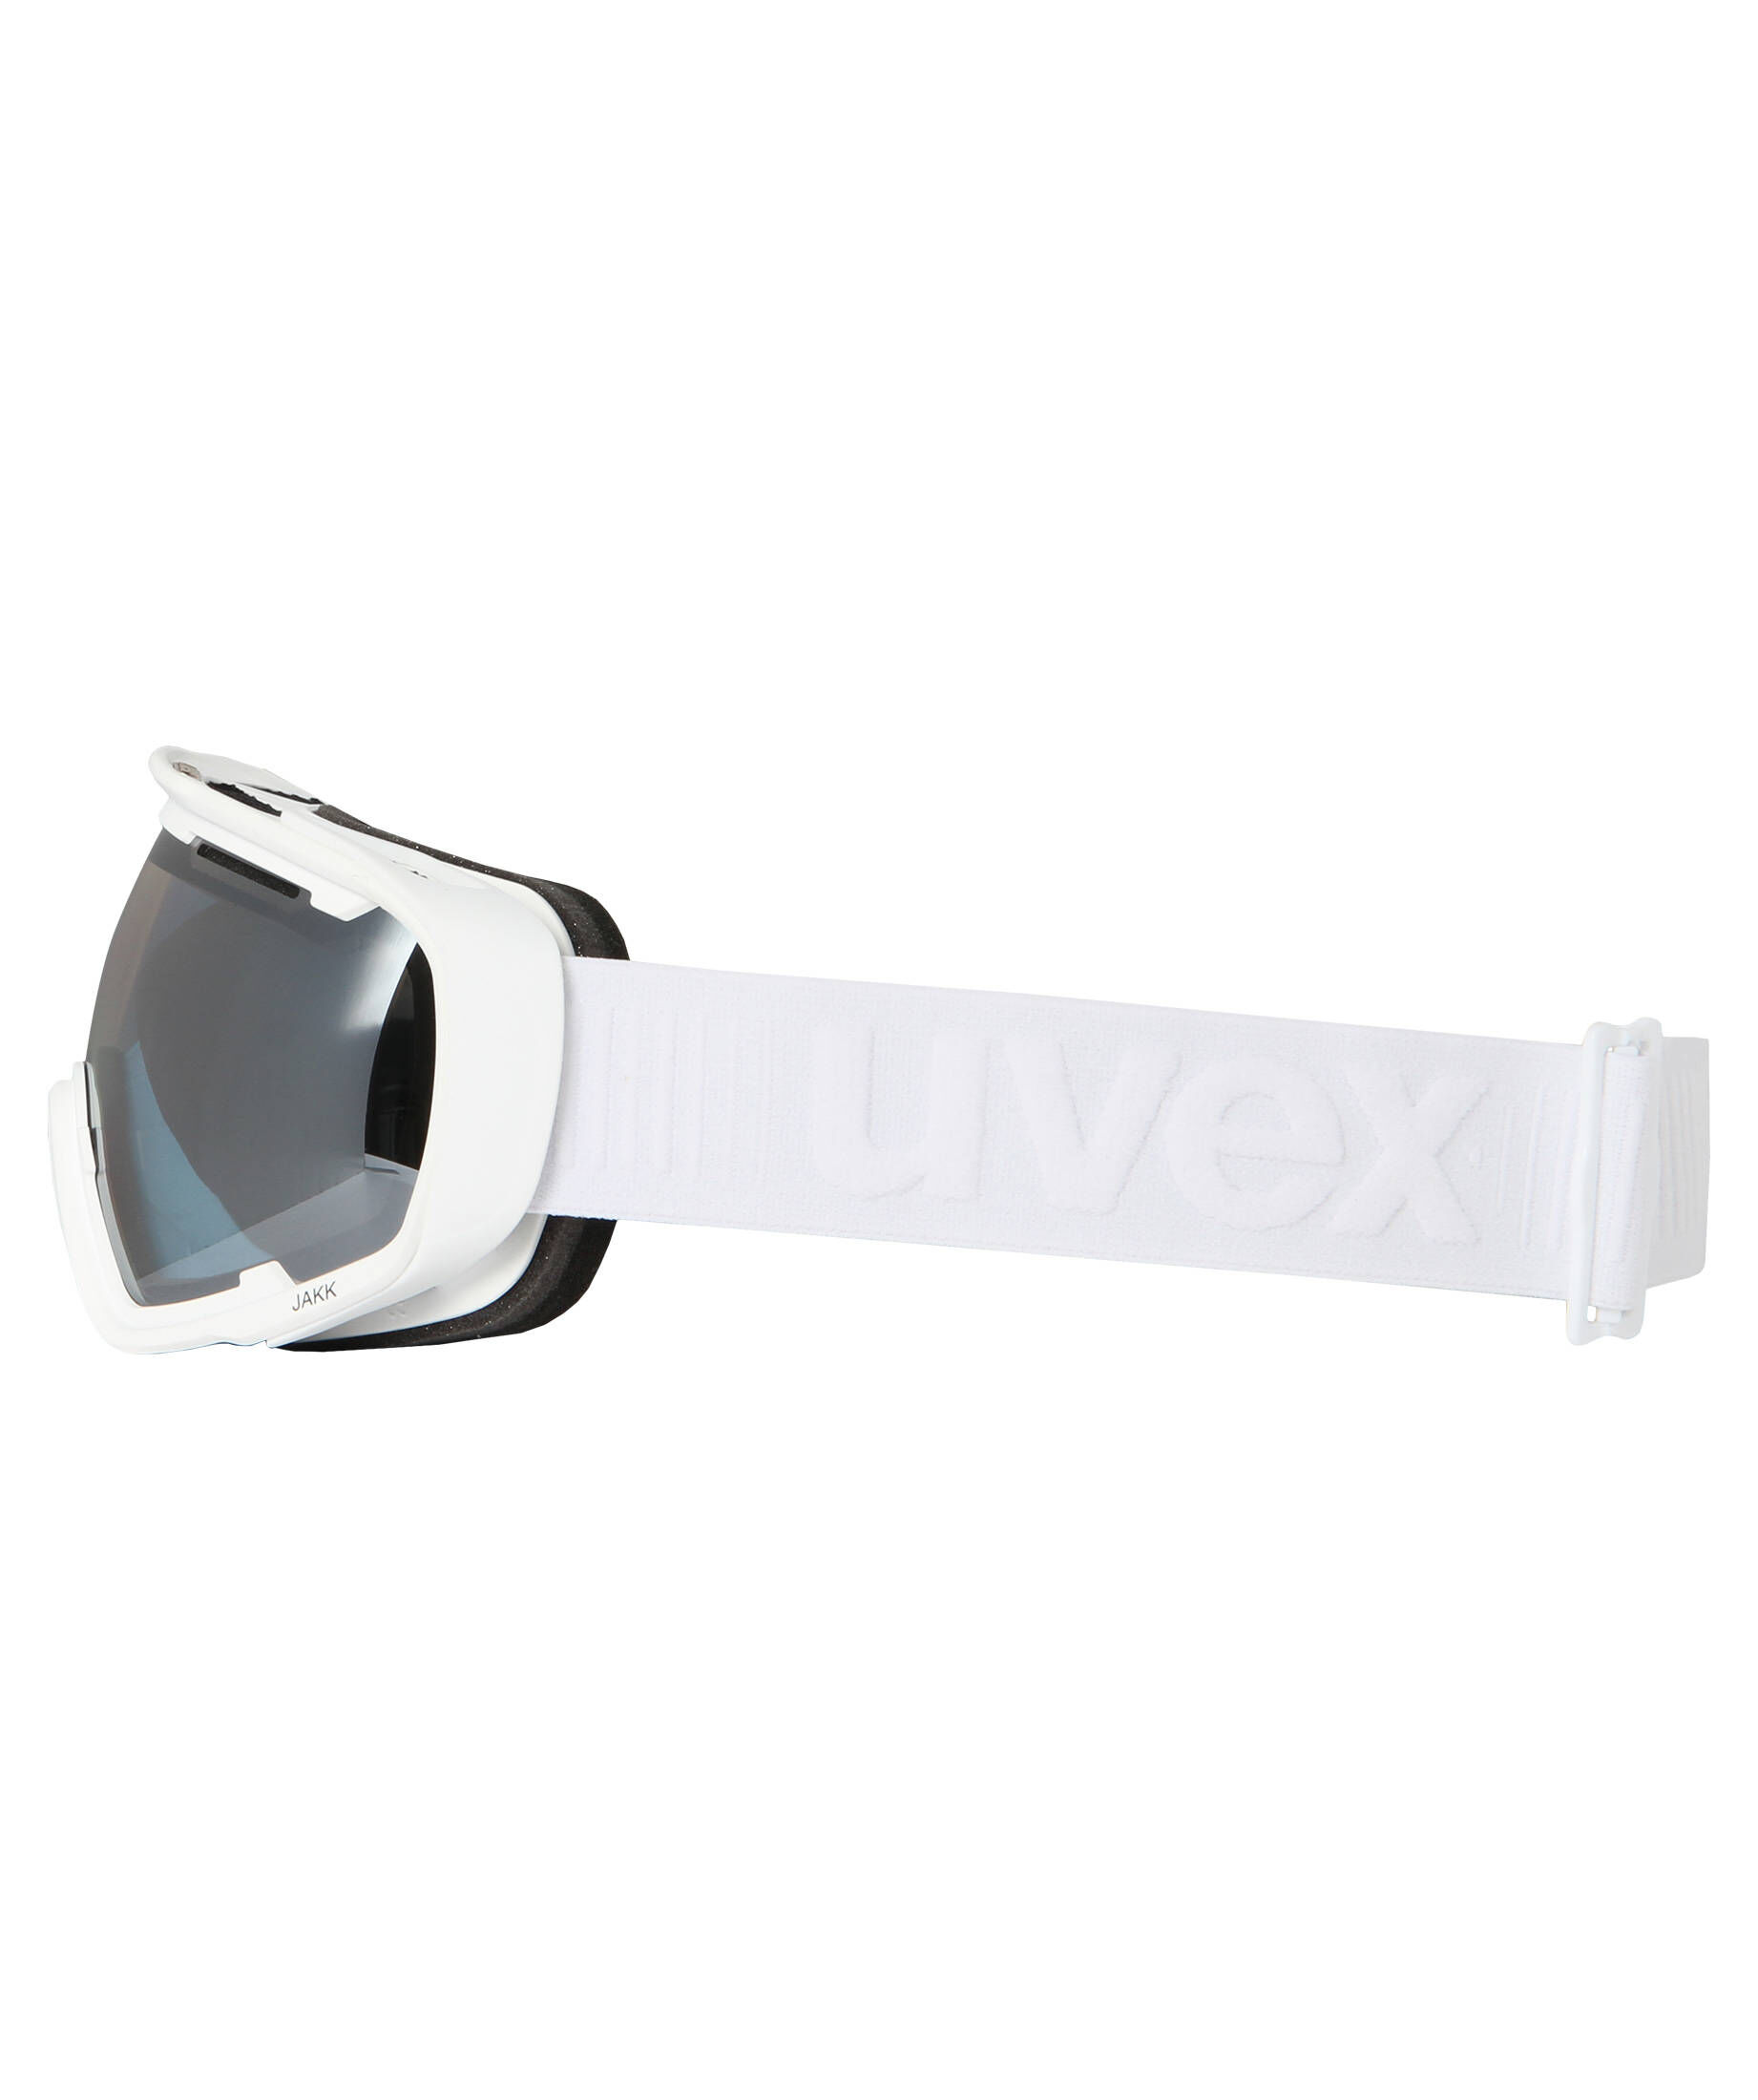 UVEX JAKK SPHERIC FM Full Mirror Skibrille Snowboardbrille NEU vom Fachhandel 